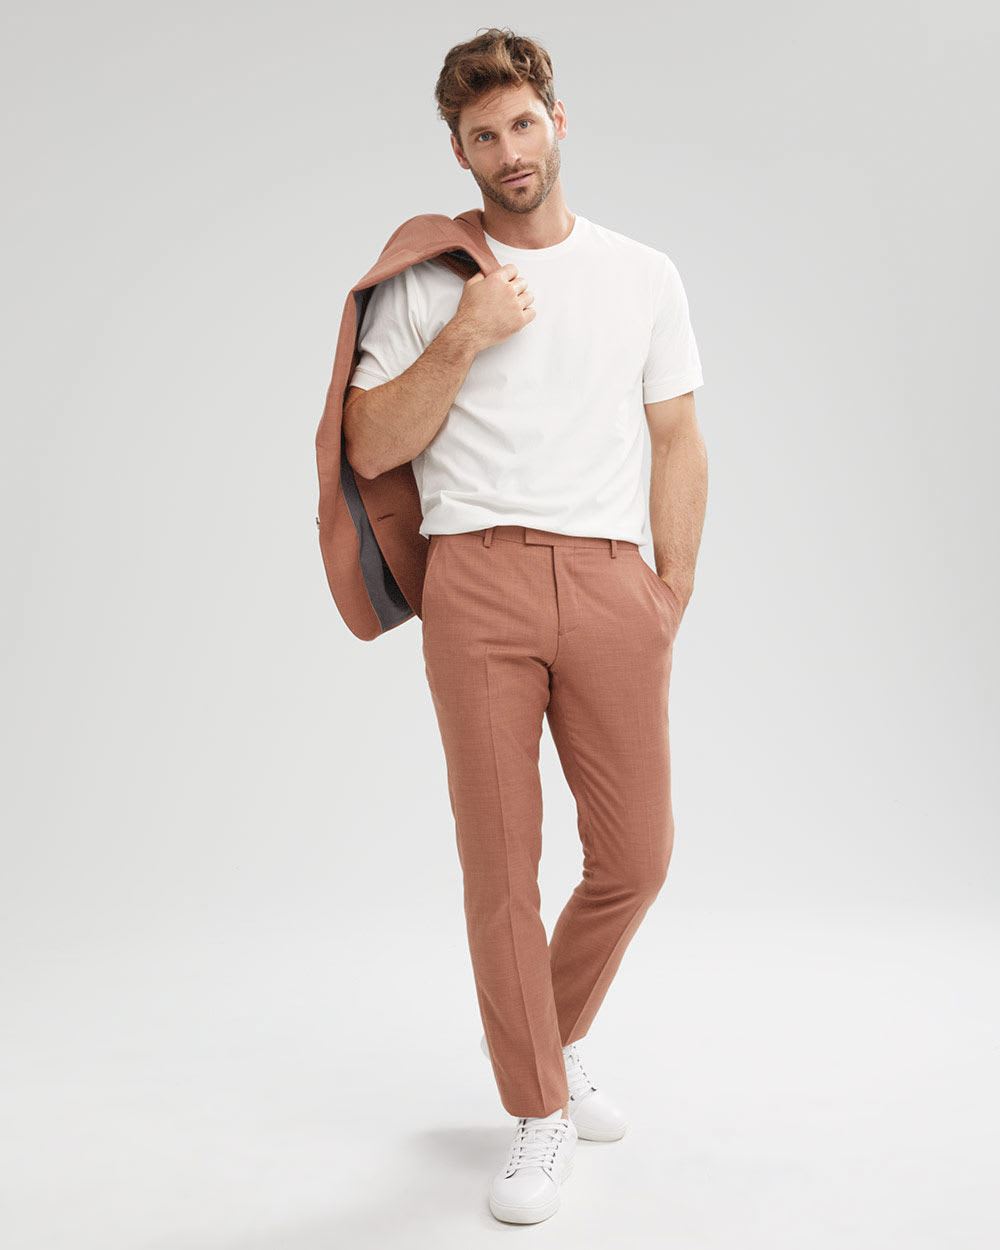 Slim Fit Colored Suit Pant